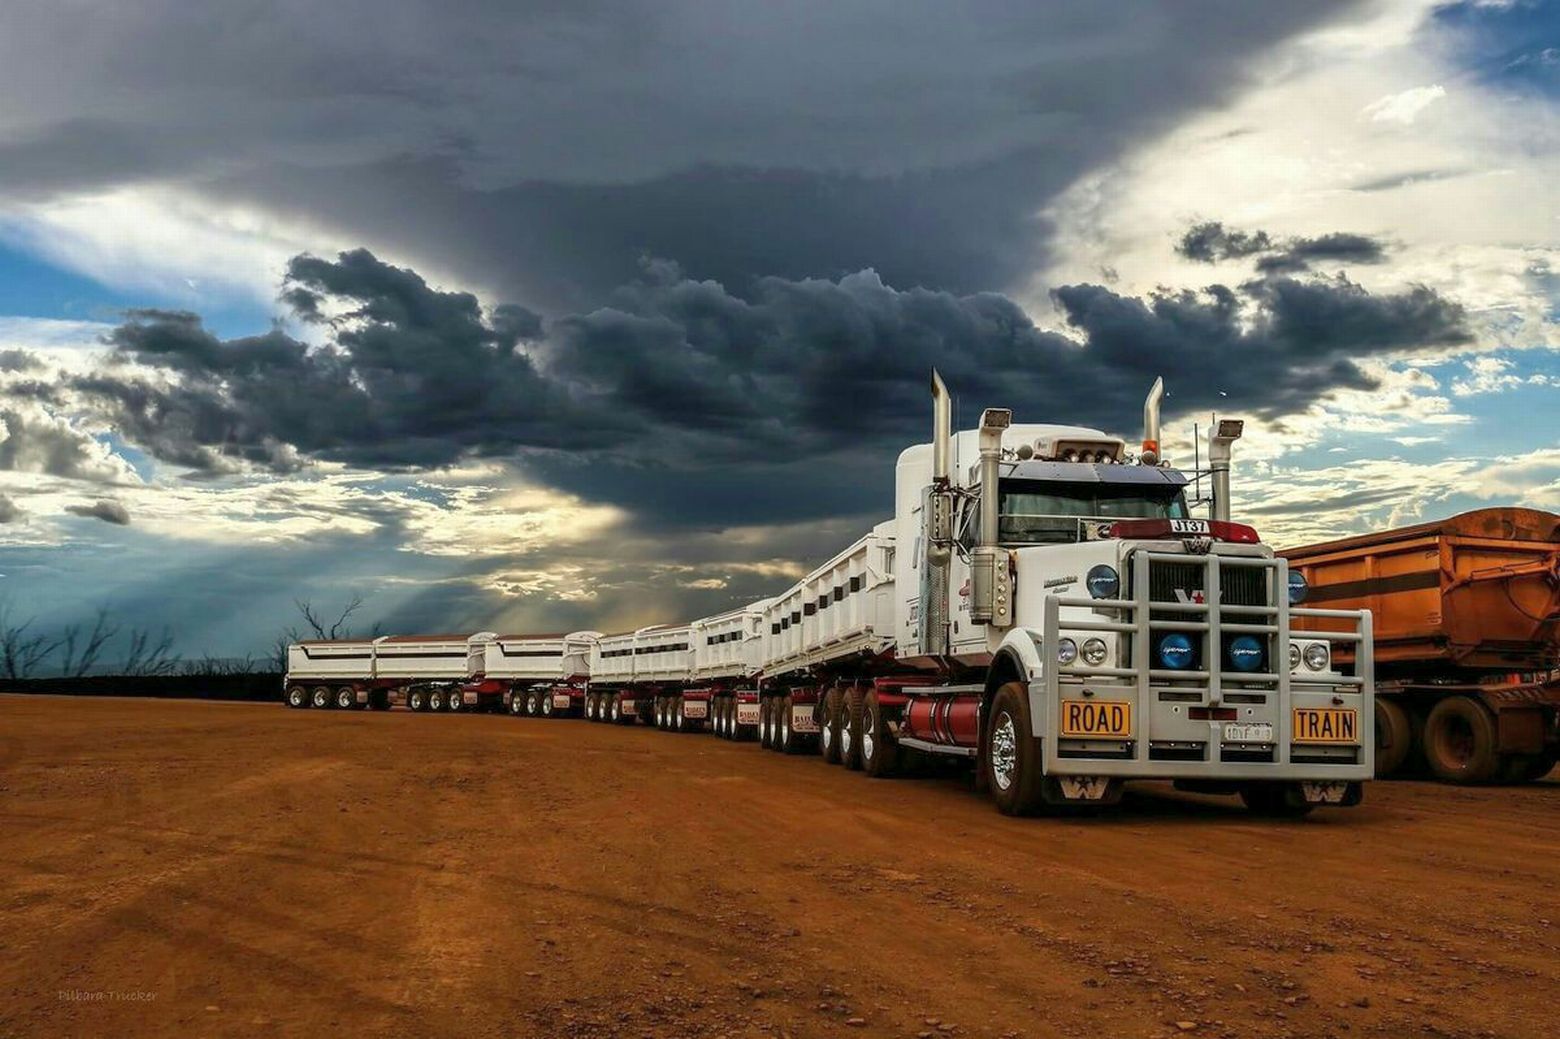 Длинный грузовик. Грузовые автопоезда Австралии. Роуд трейн Австралии. Самый длинный автопоезд в Австралии. Австралийский автопоезд 104 прицепа.